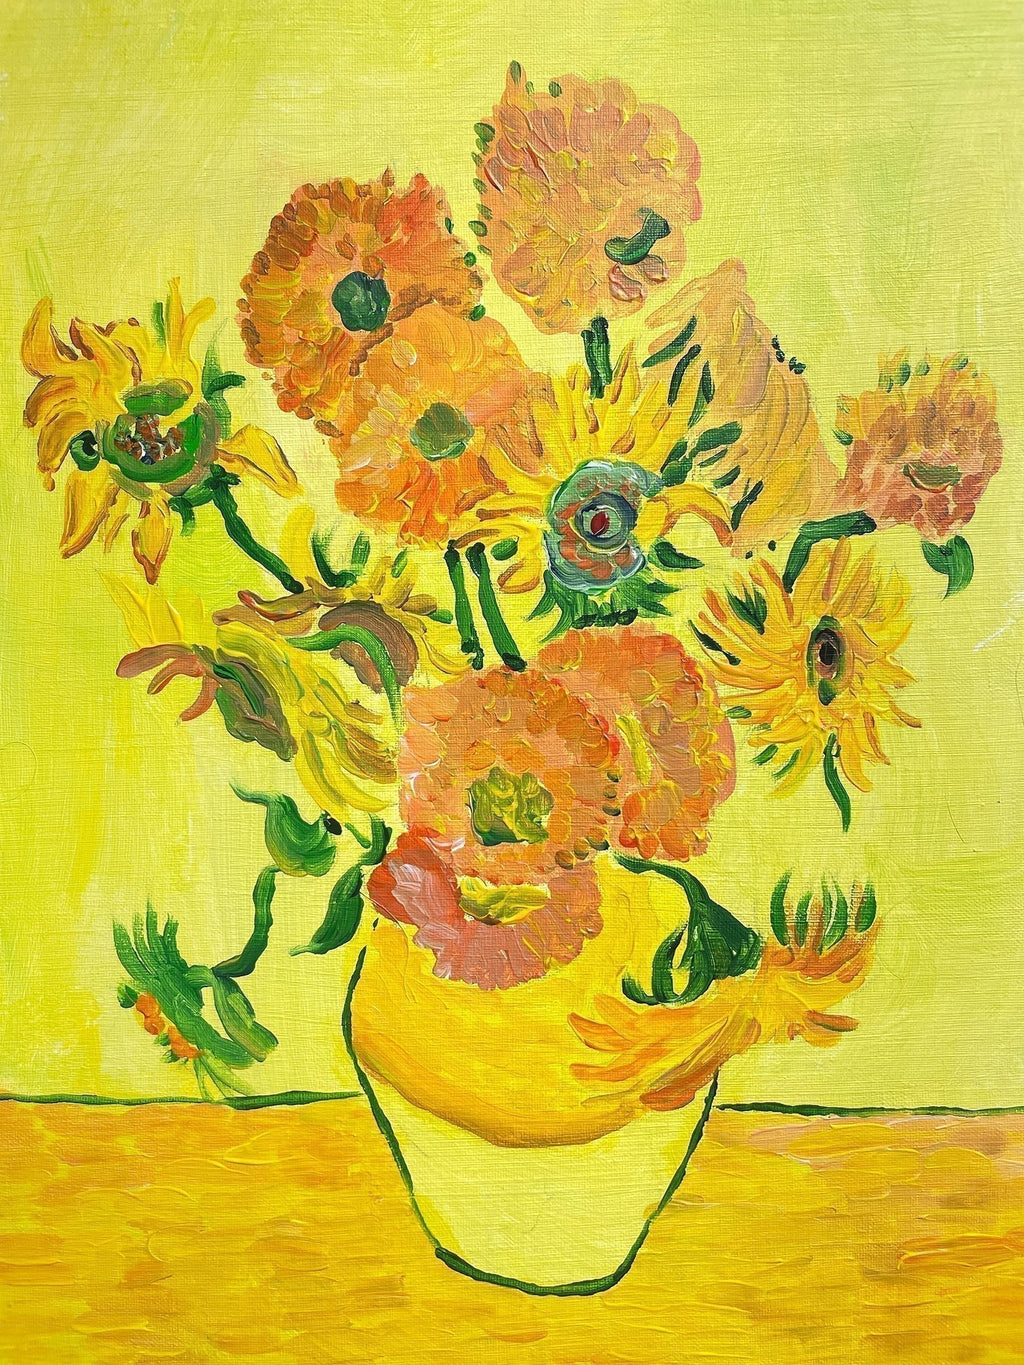 【日本橋】3月9日 (土) 14:00-17:00 | フィンセント・ファン・ゴッホ | ひまわり *下描きあり (Sunflower by Vincent van Gogh *canvas drafted at Nihon-bashi)